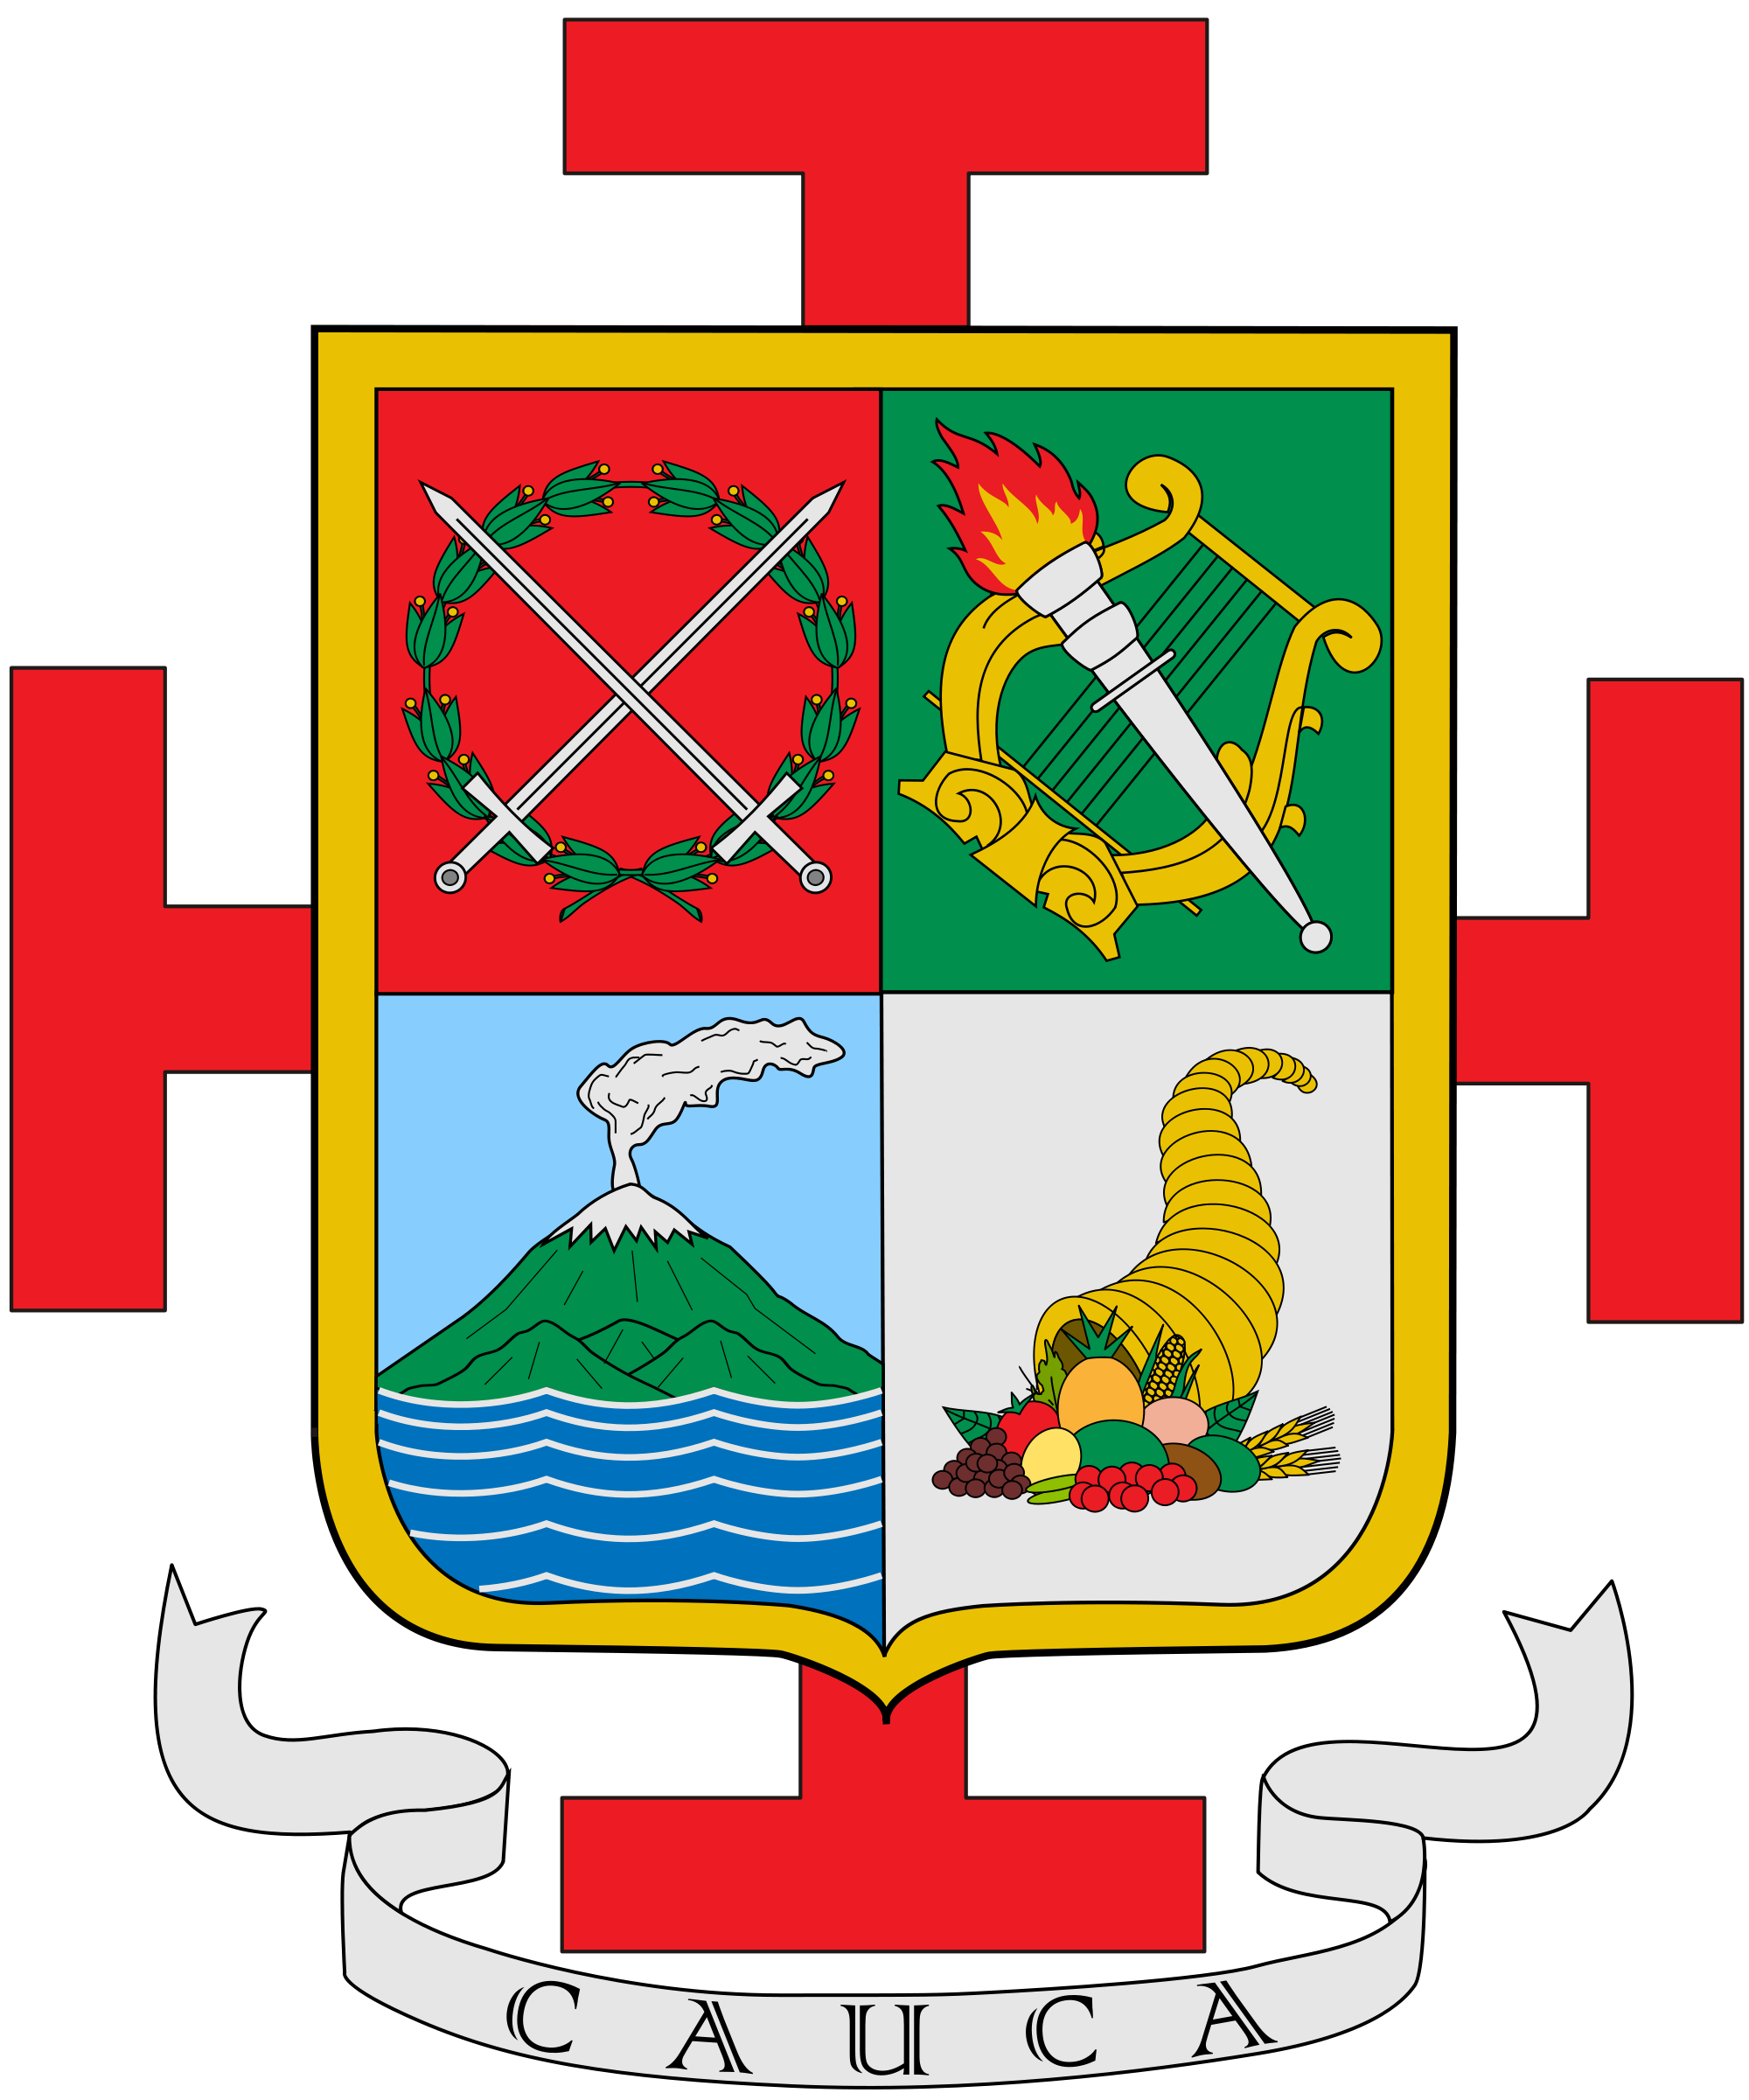 File:Escudo del Cauca.svg.